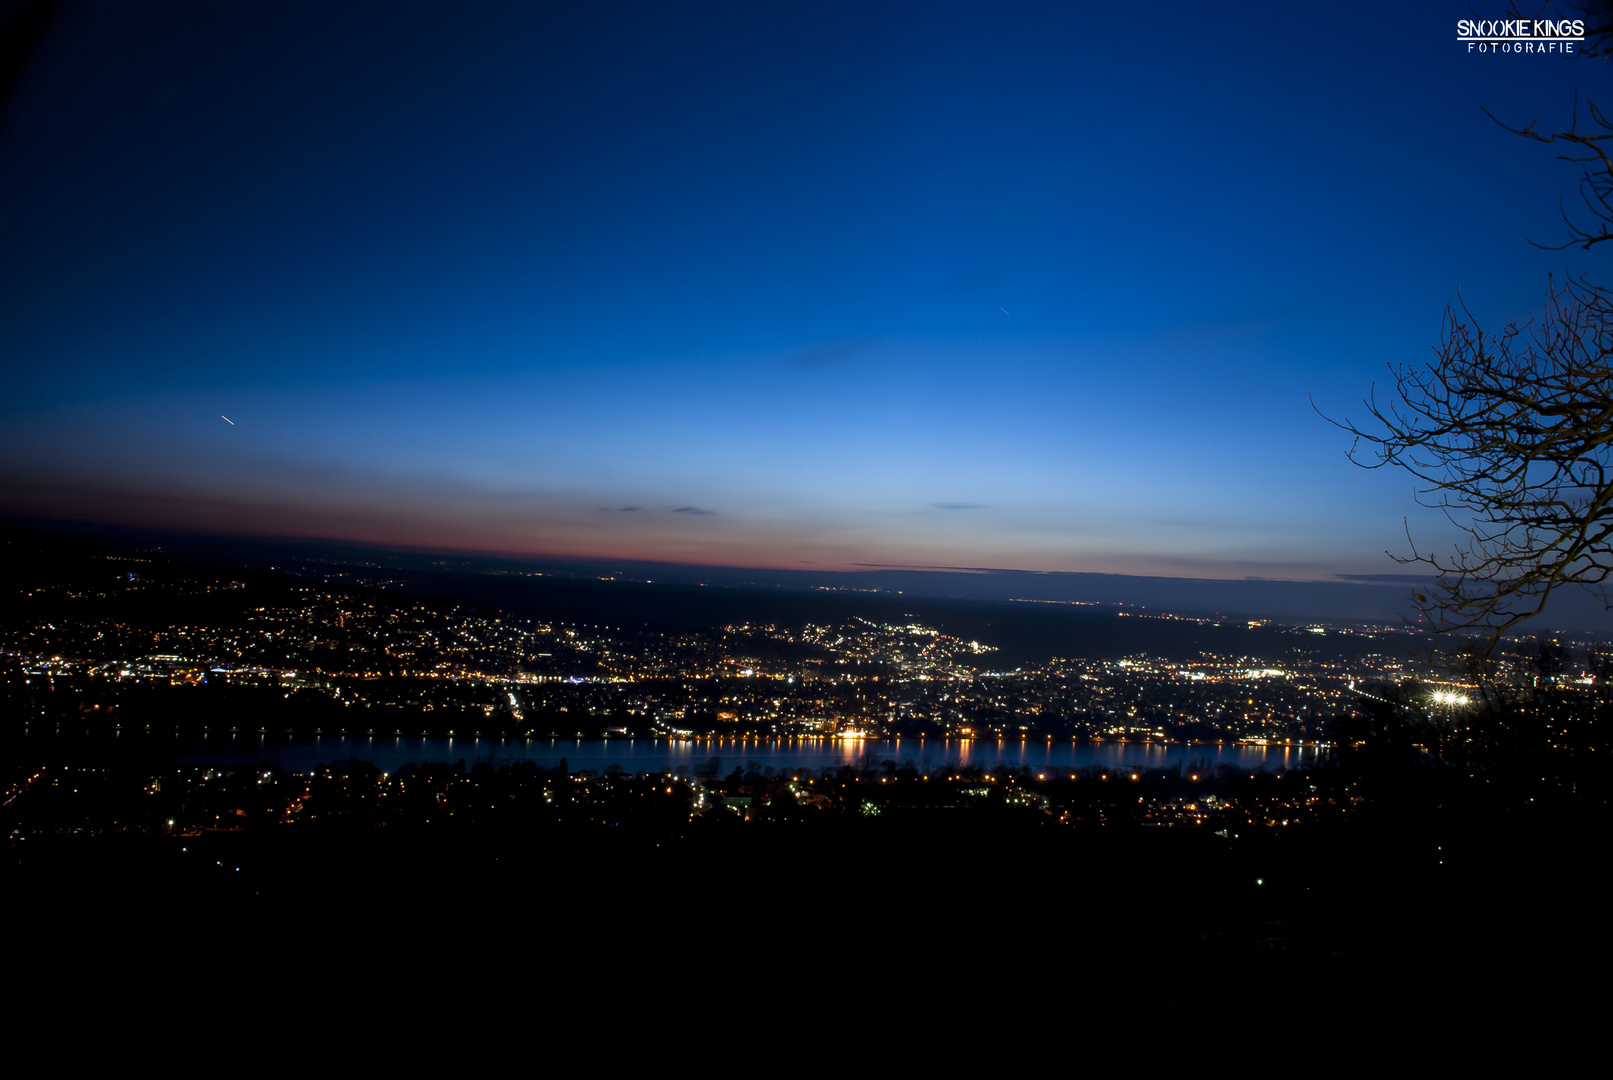 Bonn bei Nacht